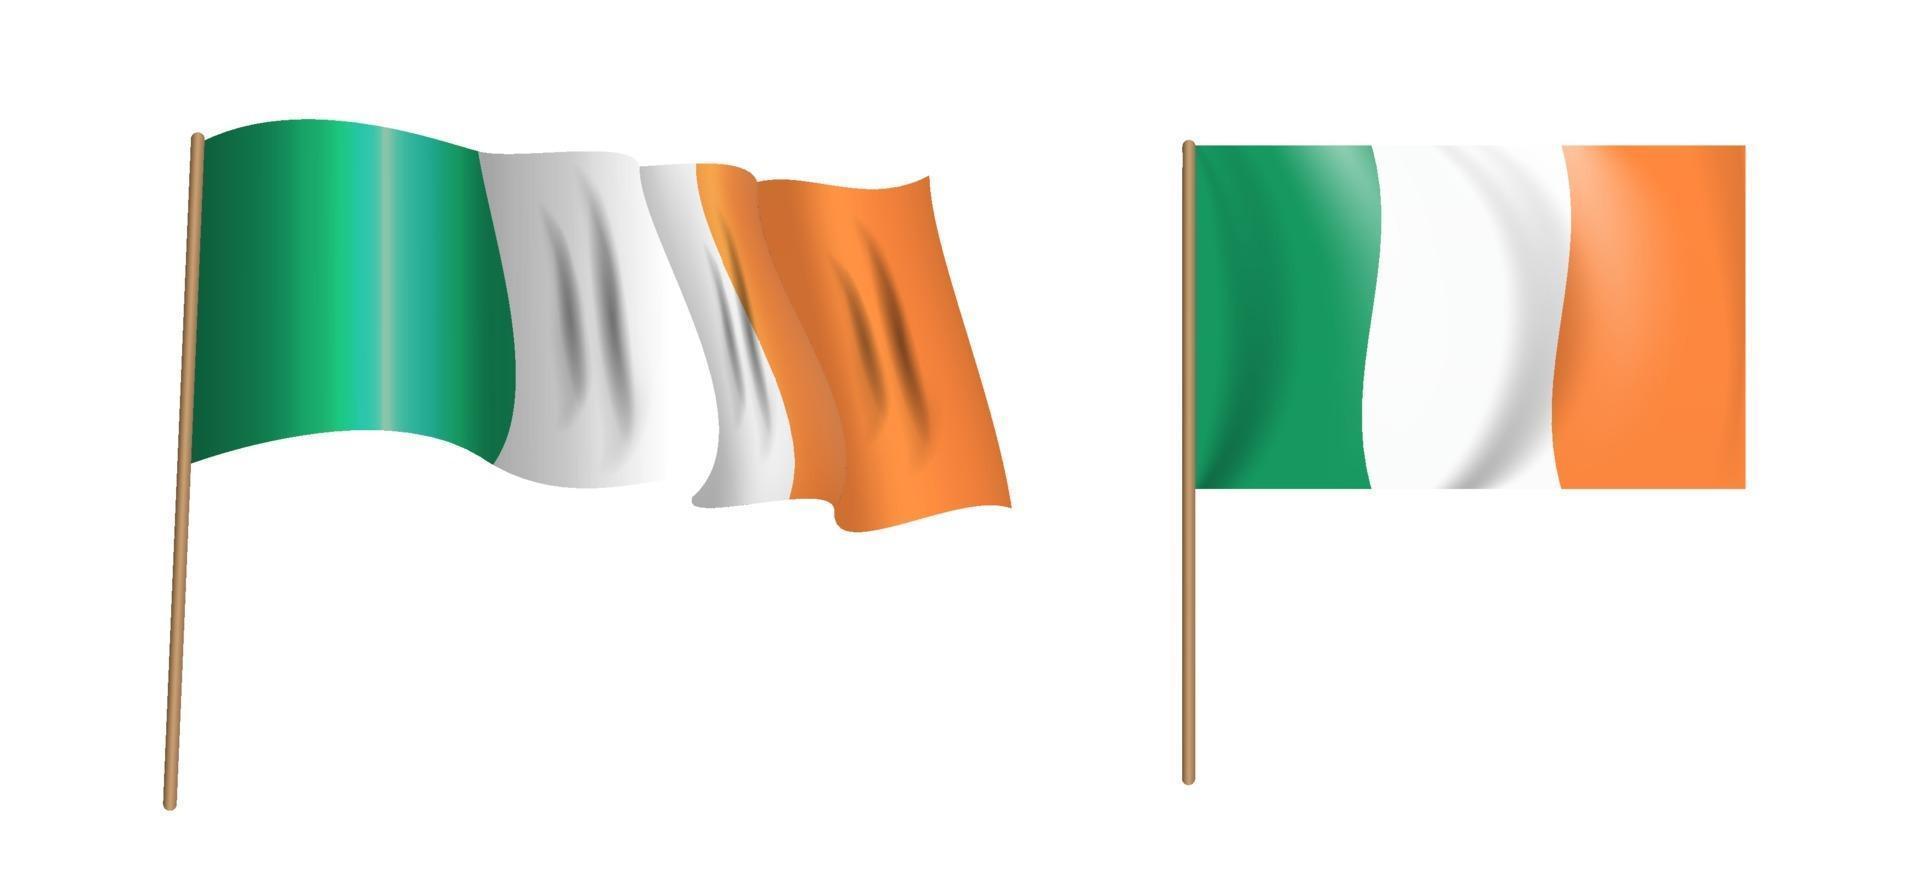 bandiera irlanda sventolante colorata e naturalistica dell'Irlanda. vettore